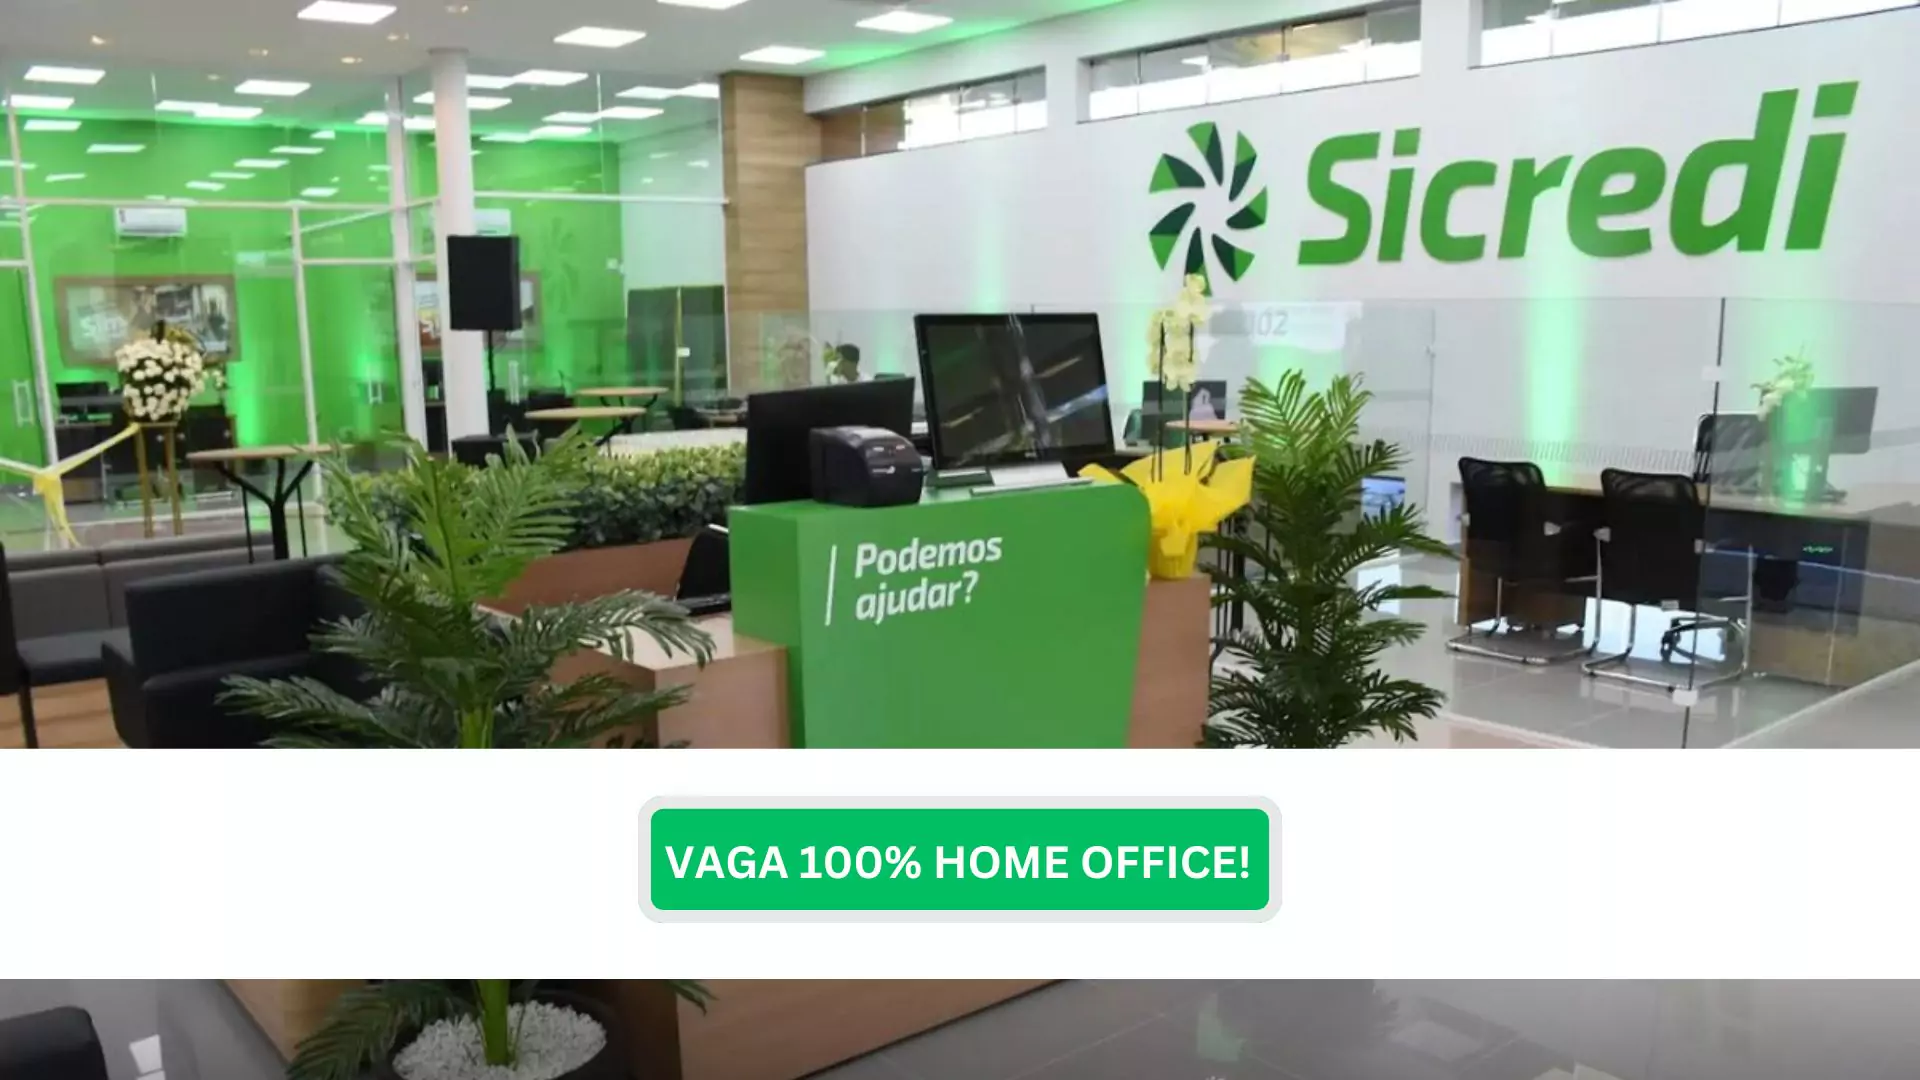 SICREDI Abriu Vaga 100% Home Office para sua Equipe de Dados. Confira!